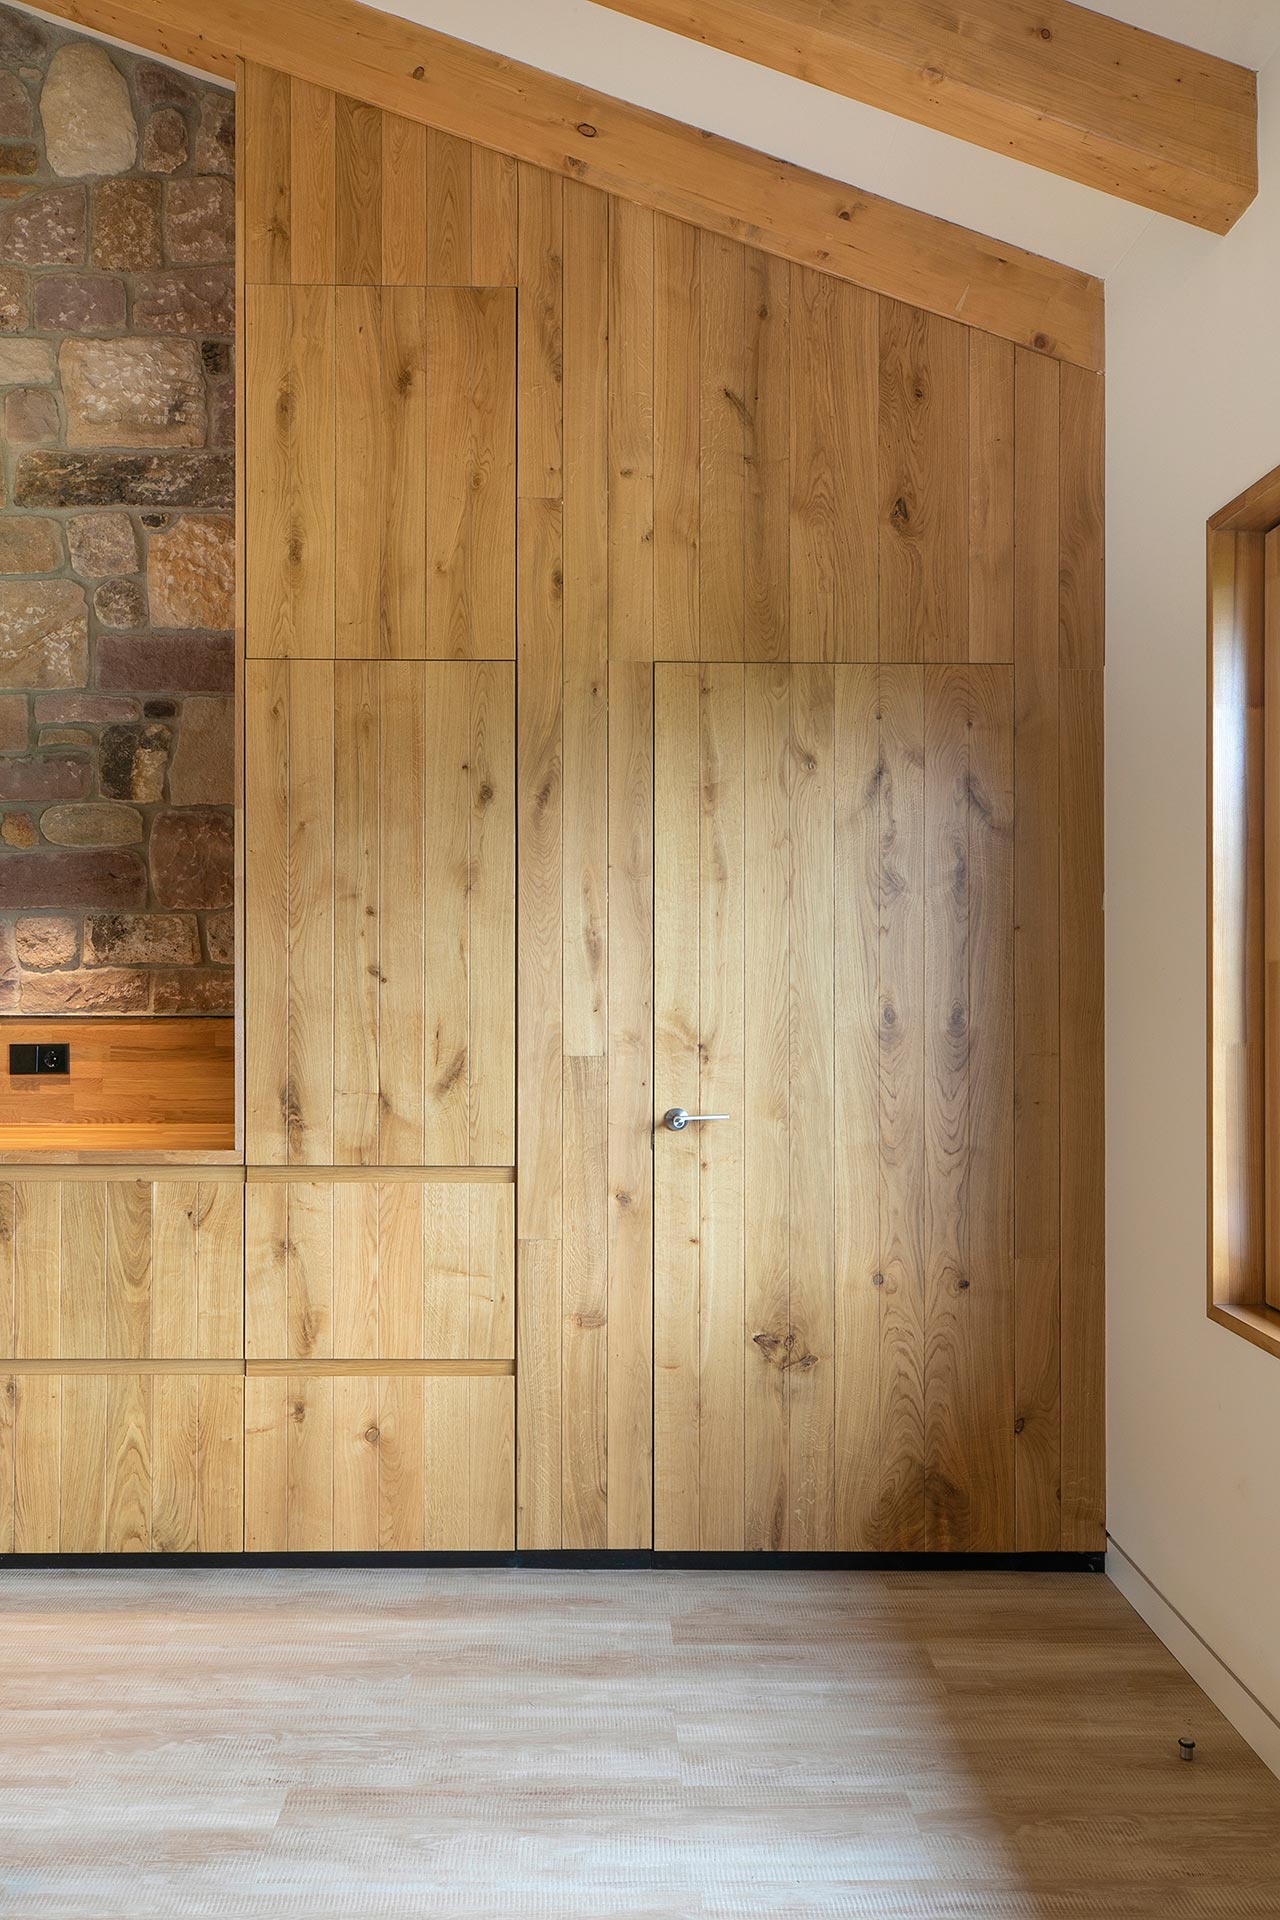 Panelado de madera de alojamiento rural moderno en Proaño diseñada por Moah Arquitectos en Cantabria